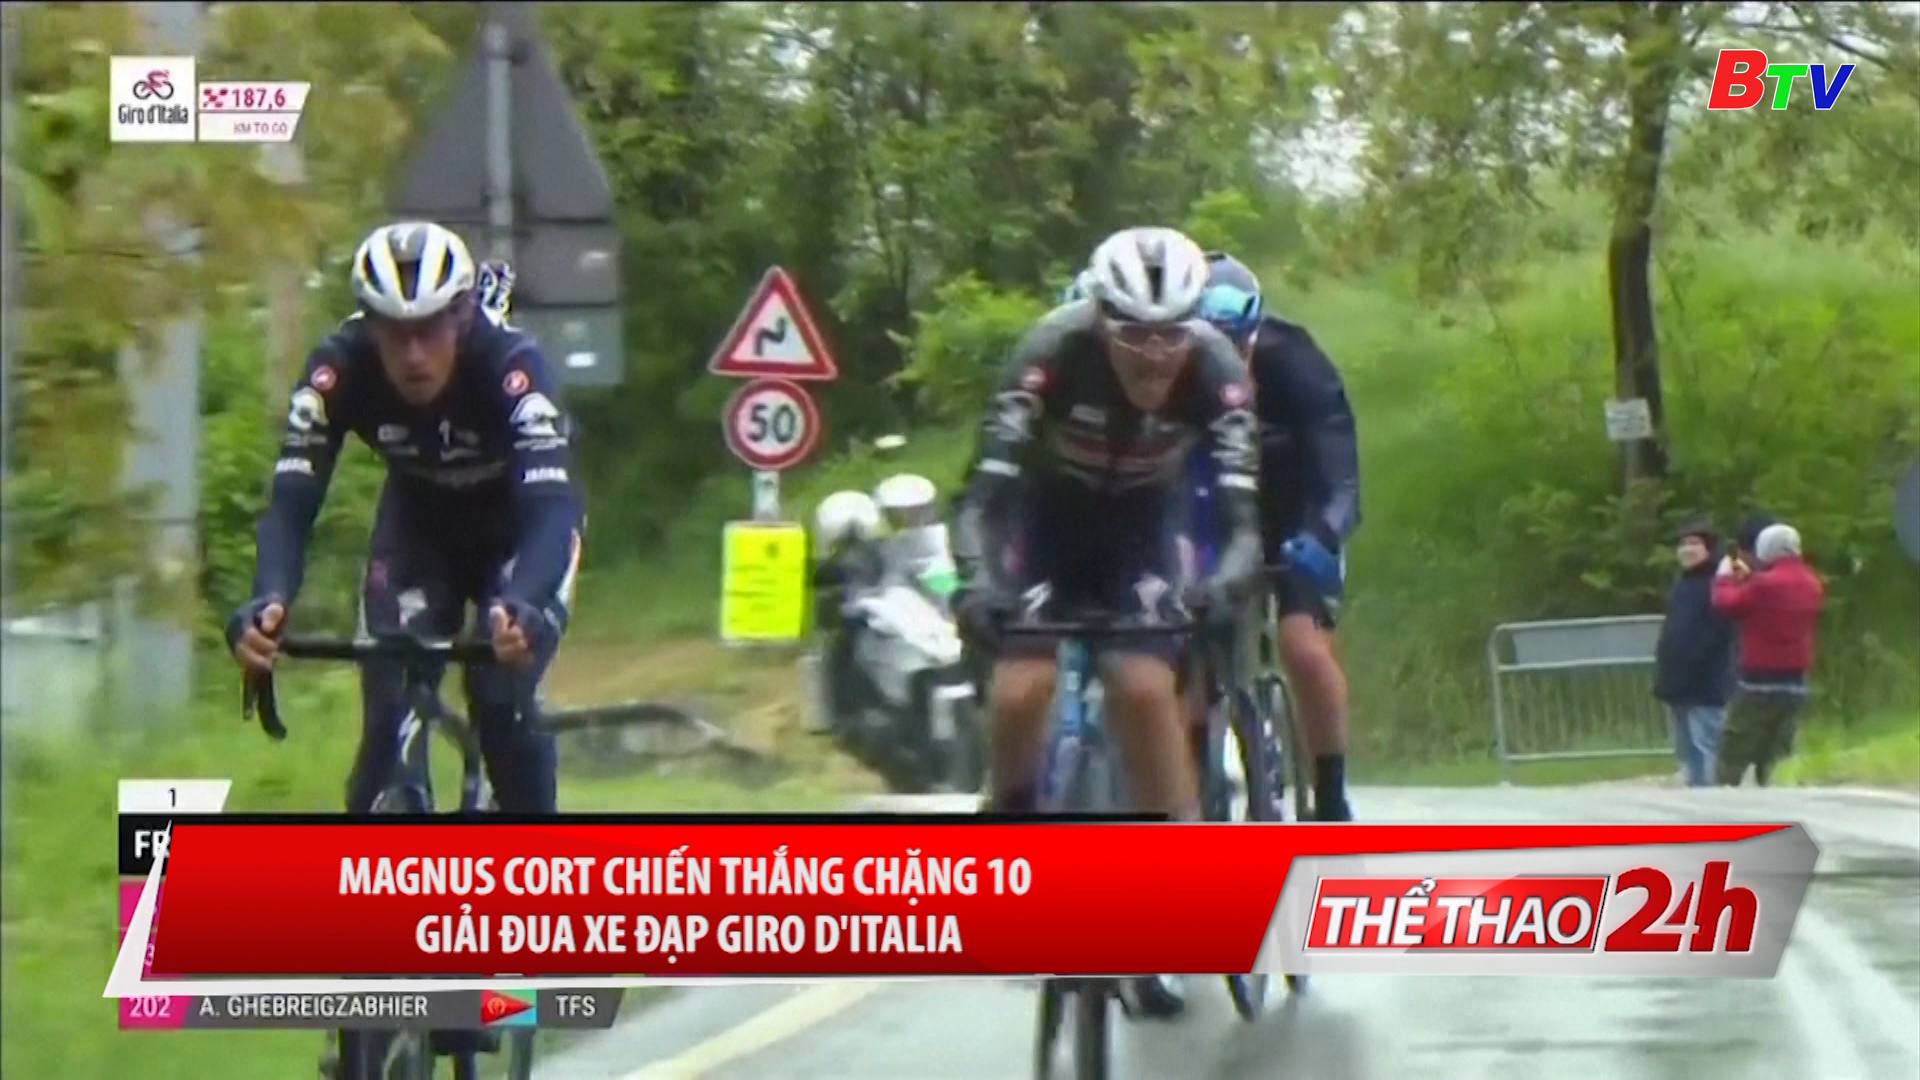 Magnus Cort chiến thắng chặng 10 Giải đua xe đạp Giro D’italia